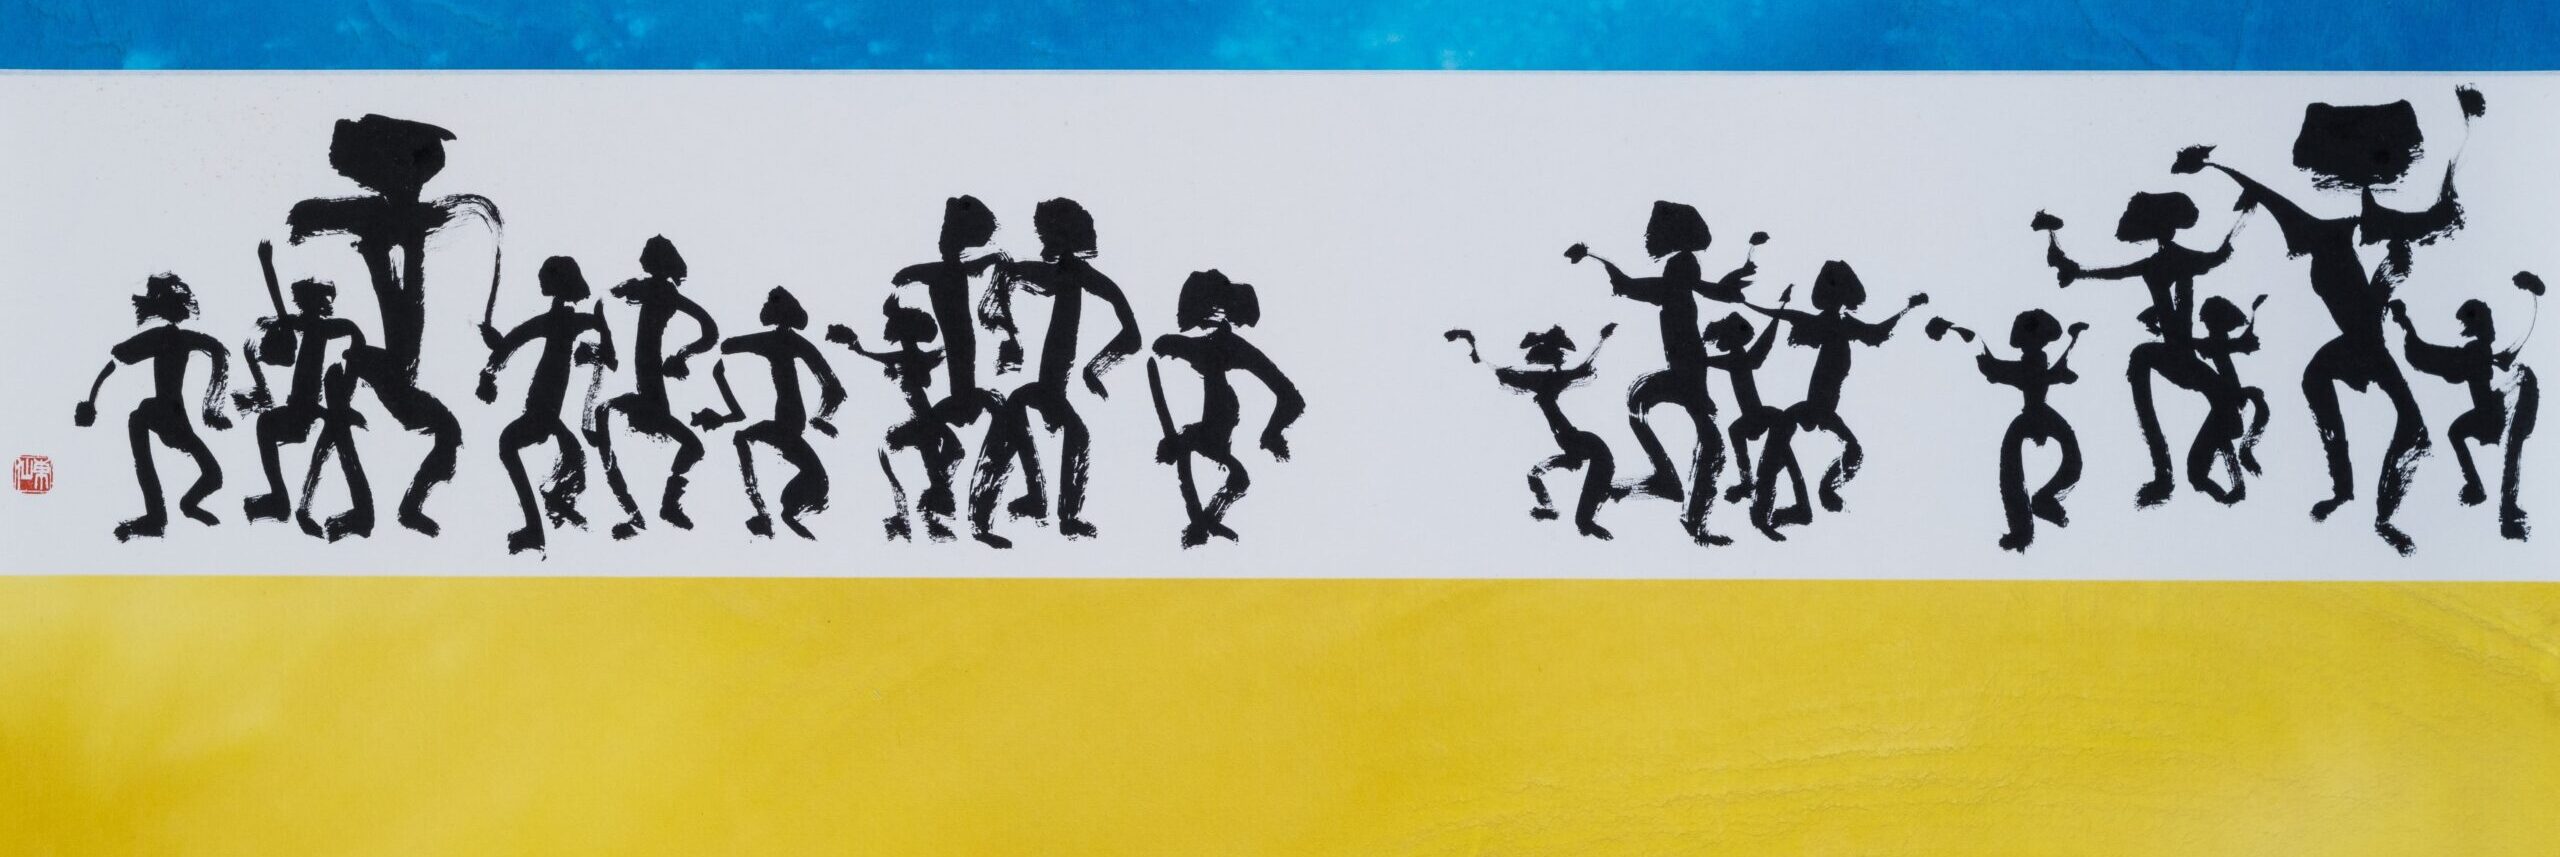 Ilustracja przedstawia pracę kaligraficzna w kolorach flagi ukraińskiej czarnymi figurkami postaci ludzkich